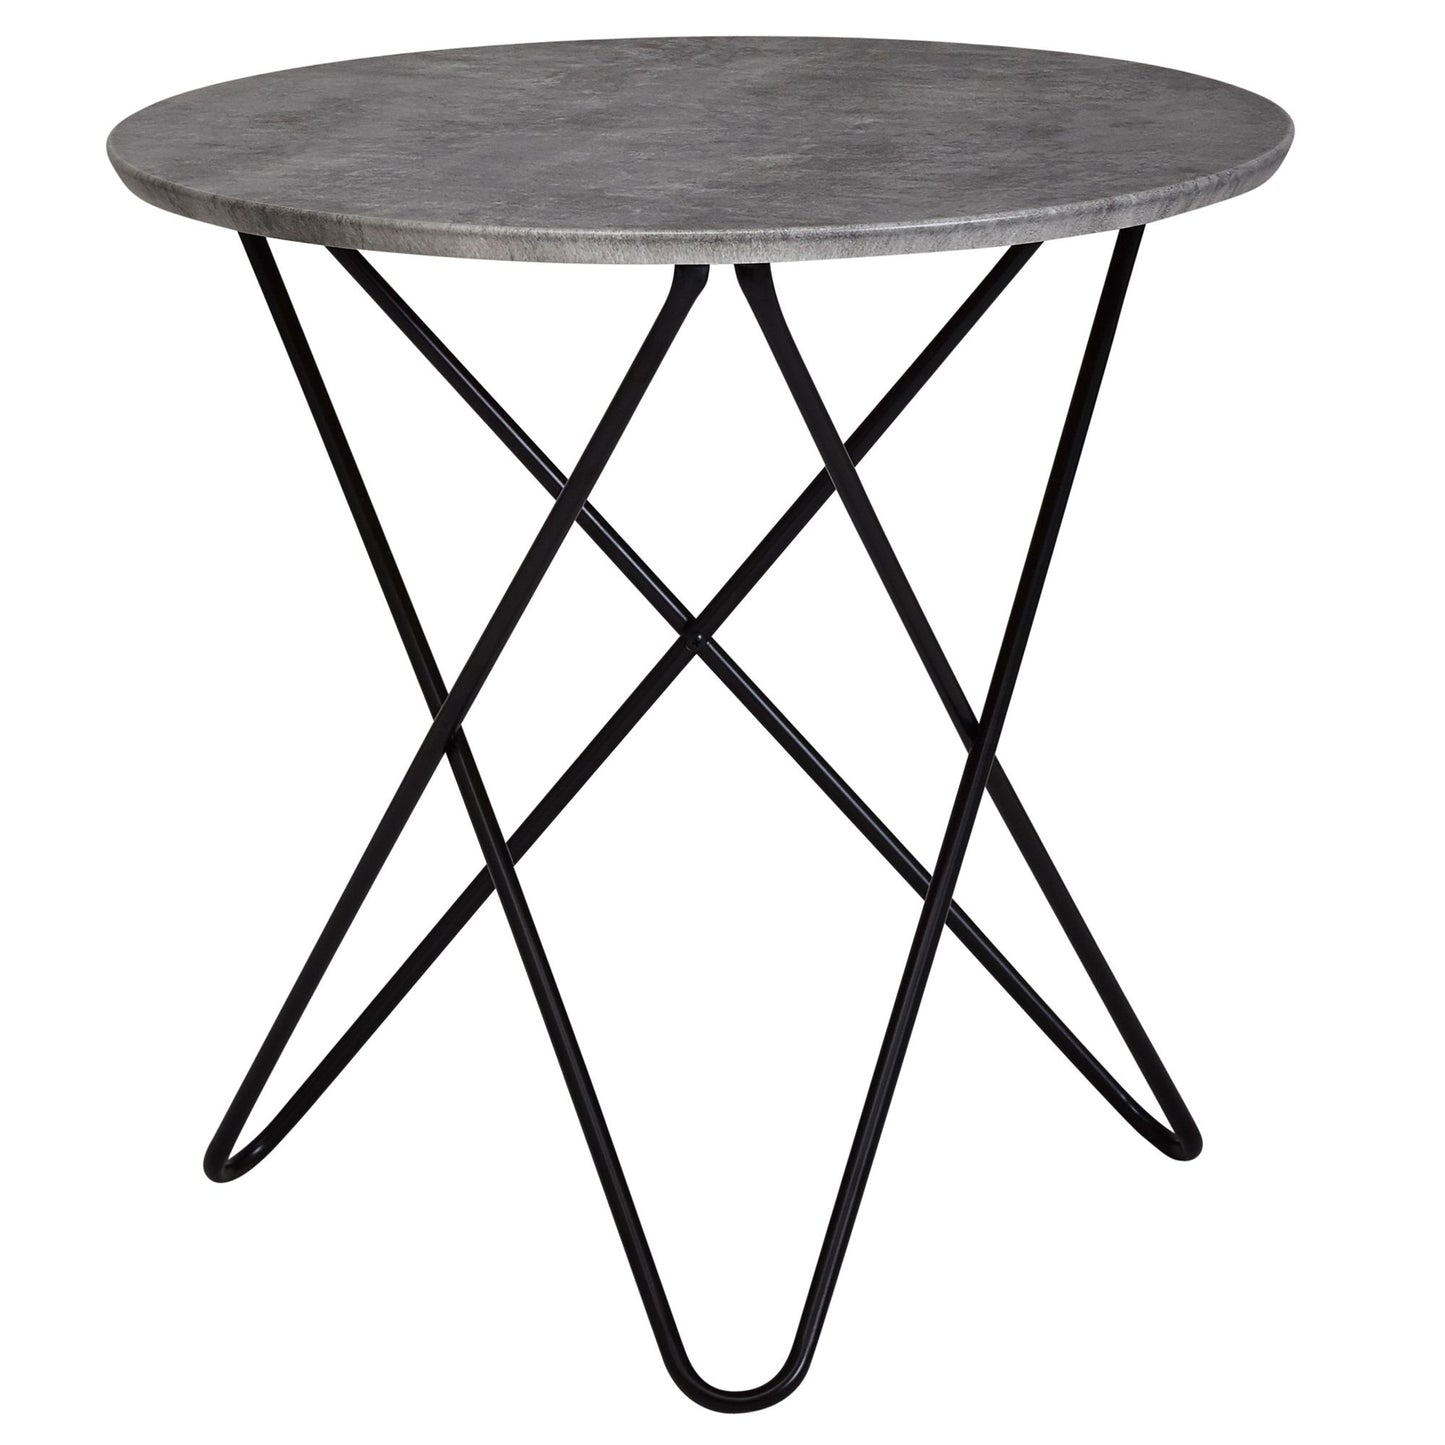 Table basse Oneida de Nancy - Table d'appoint - Table ronde - Aspect béton - Ø 60 cm - Gris